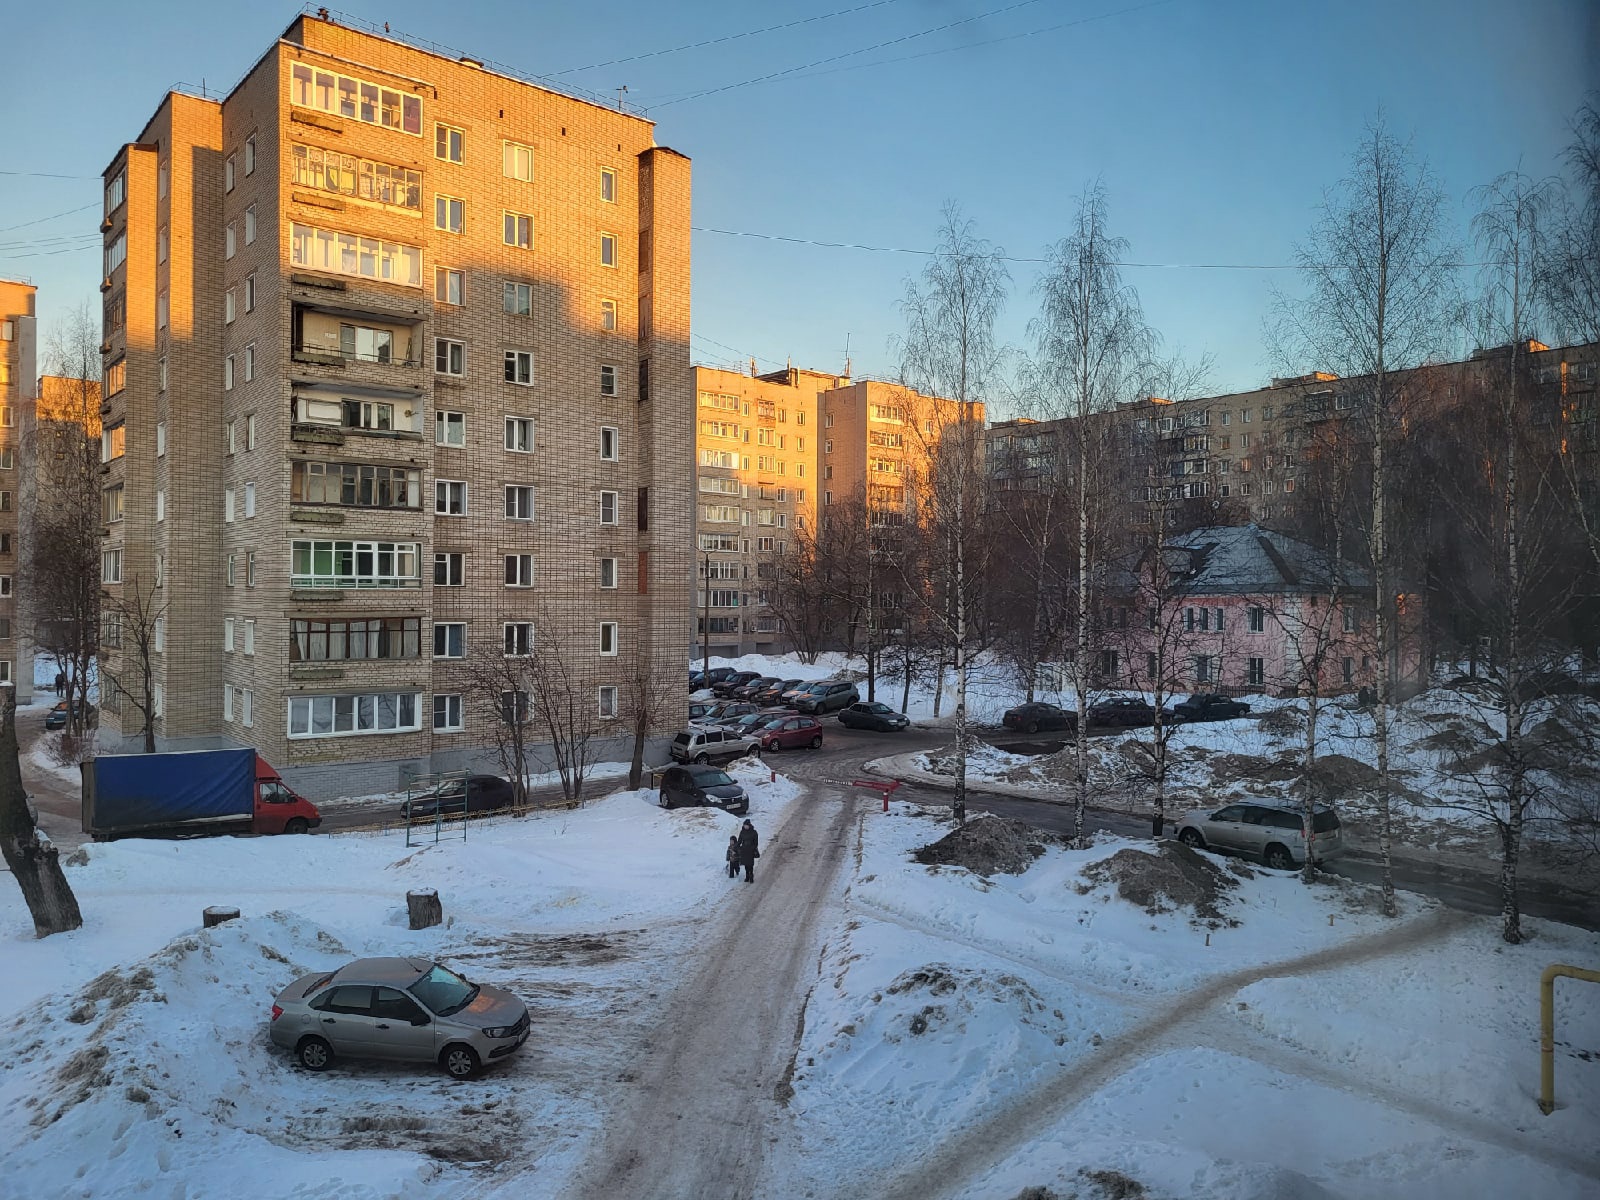 Минусовая температура и гололедица на дорогах: какой будет погода в Кирове 11-12 марта?